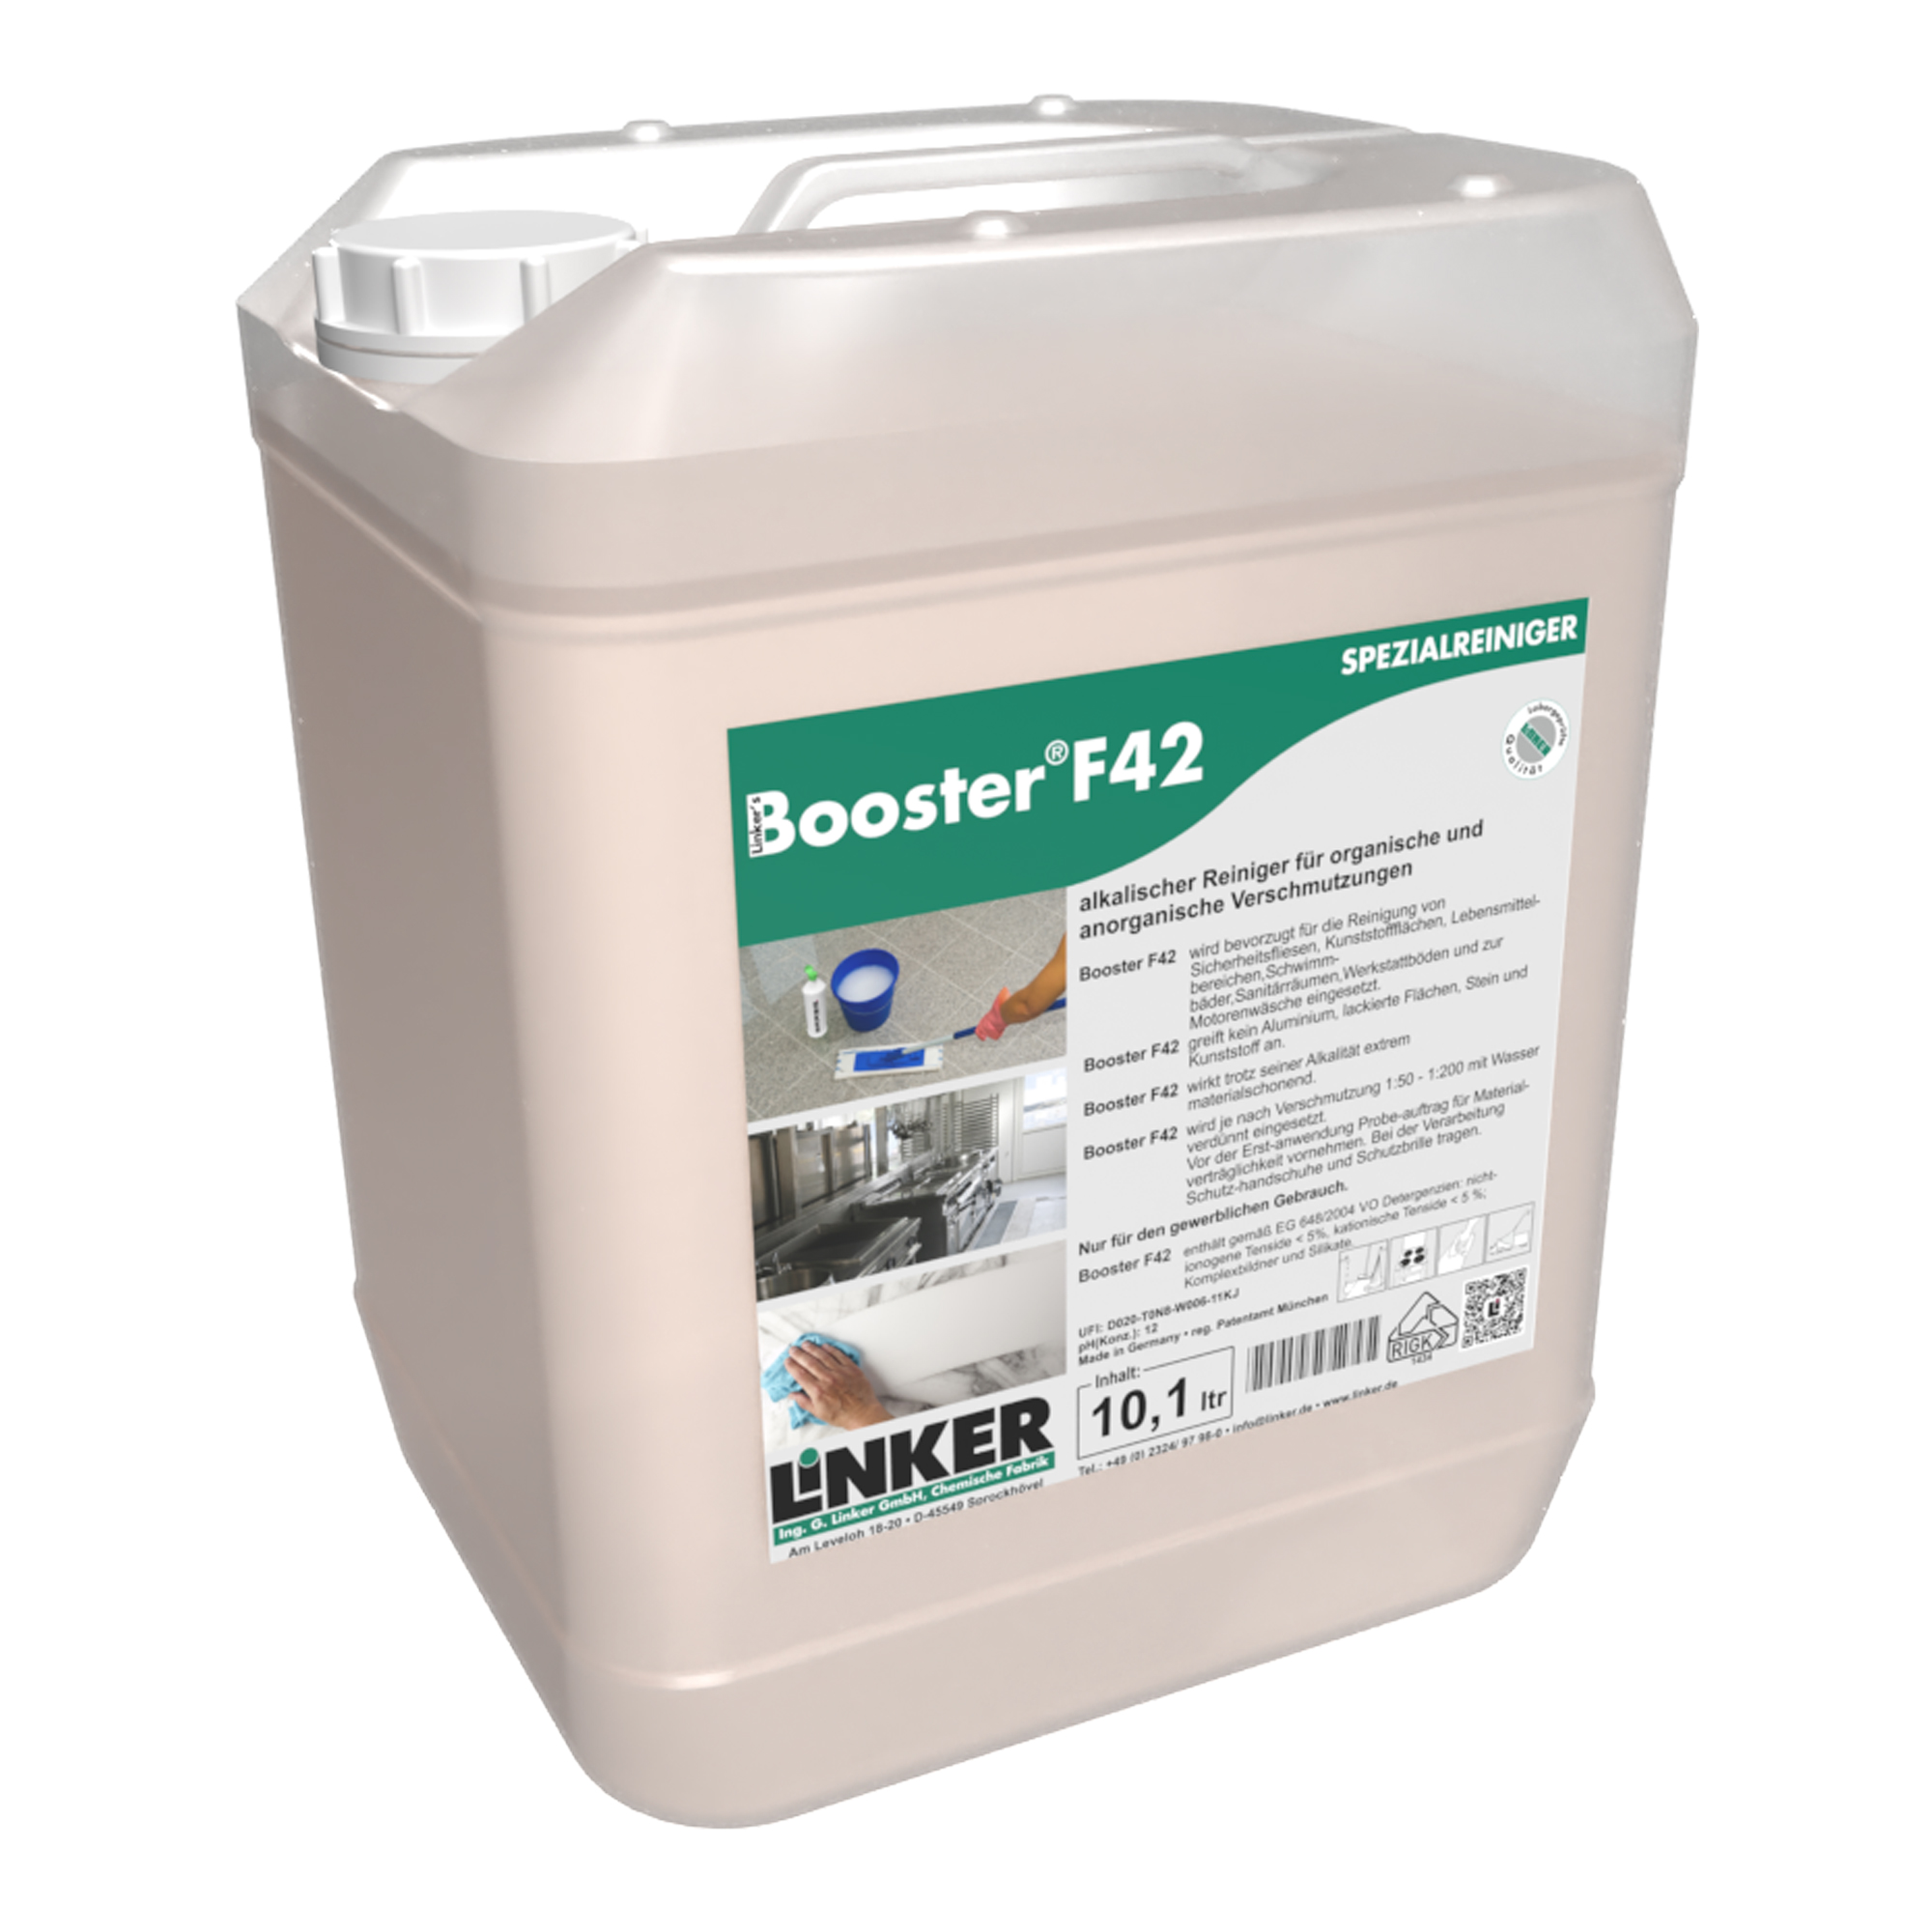 Linker Booster F42 alkalischer Schonreiniger